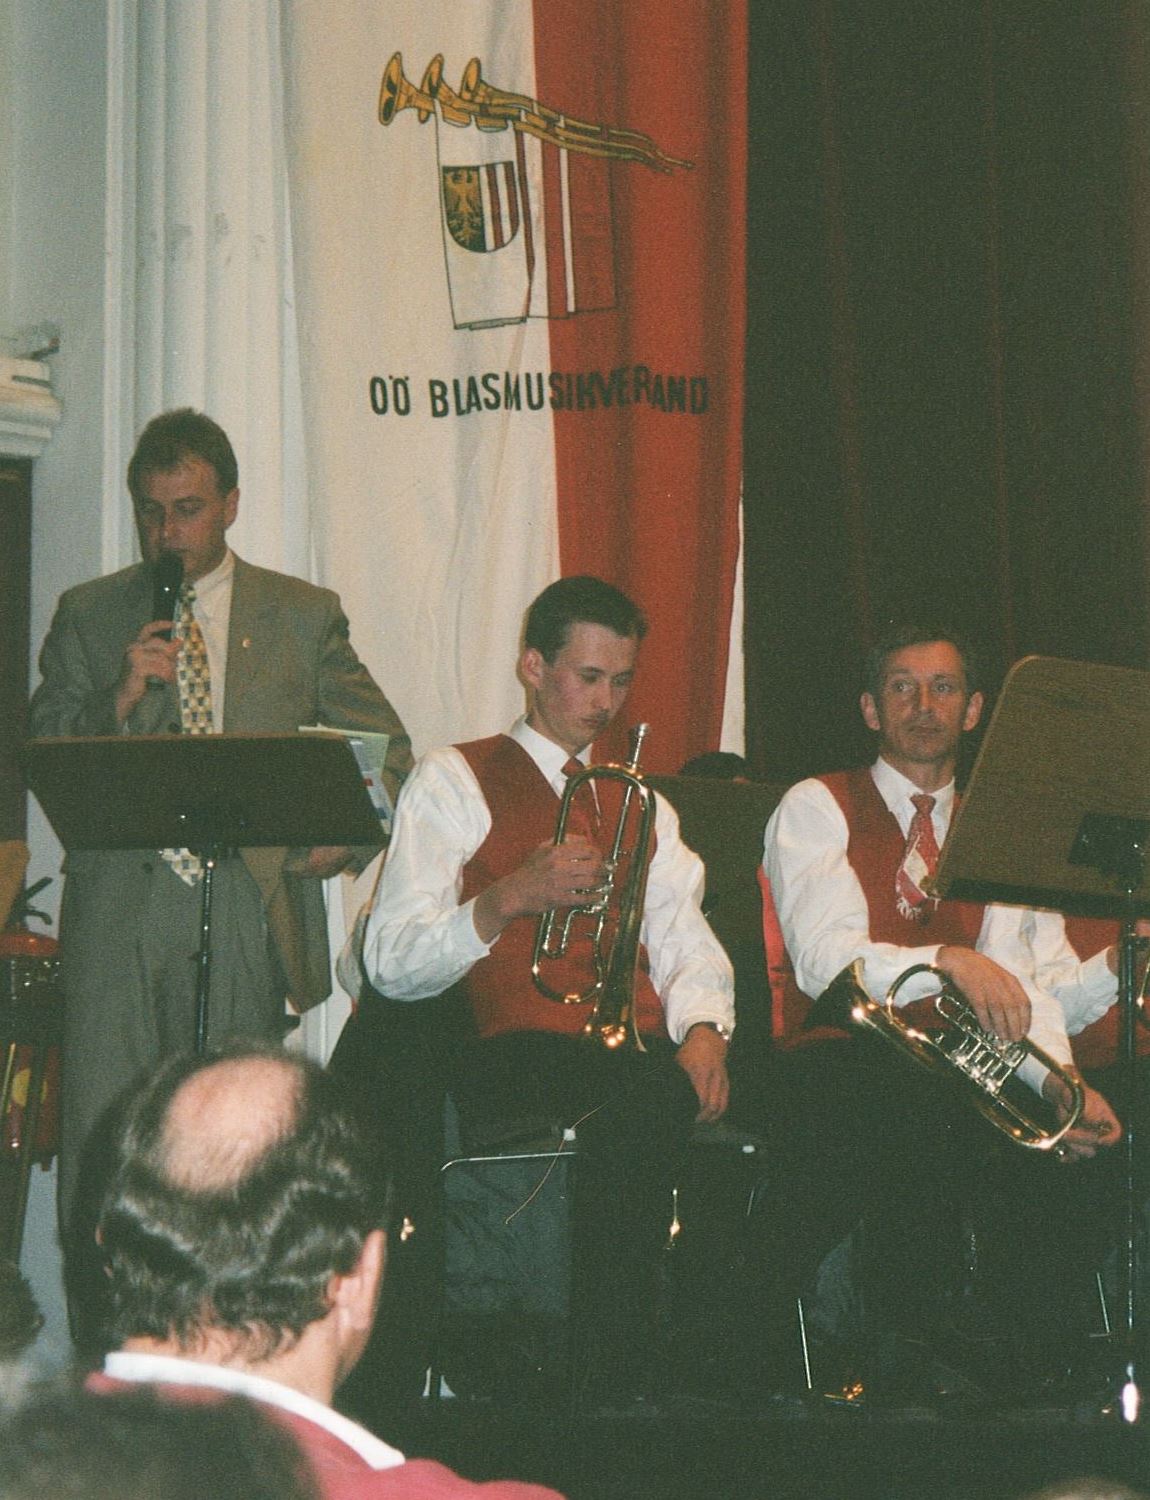 Konzertwertung 2000 in Wels